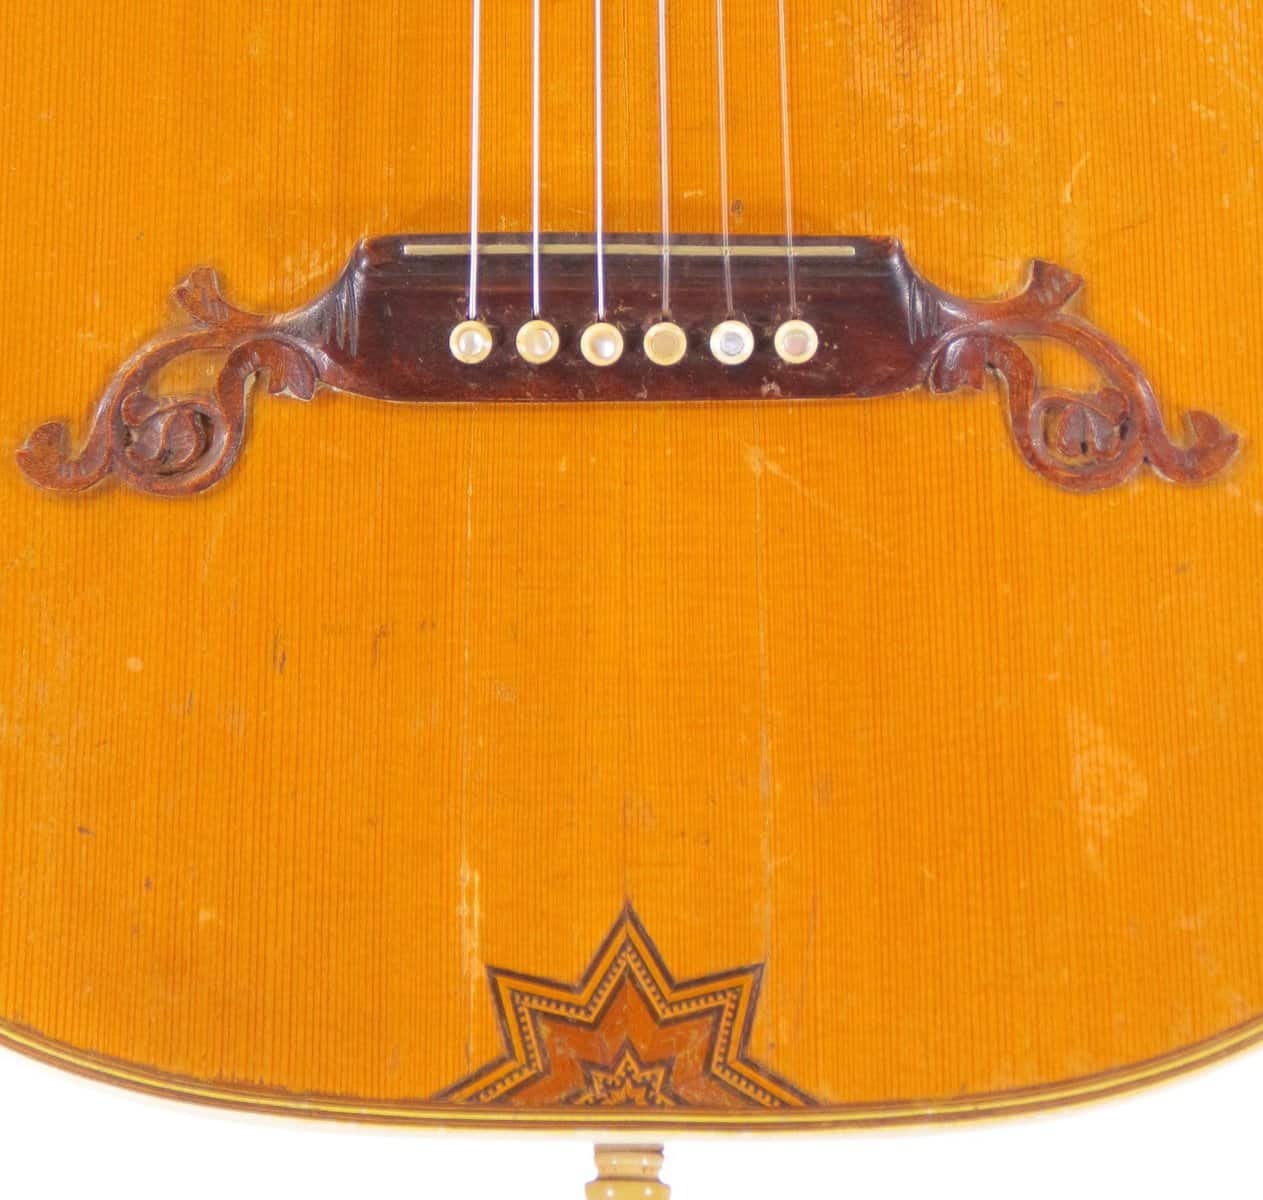 IMG 0313 1 - Coat of arms romantic guitar ~1920